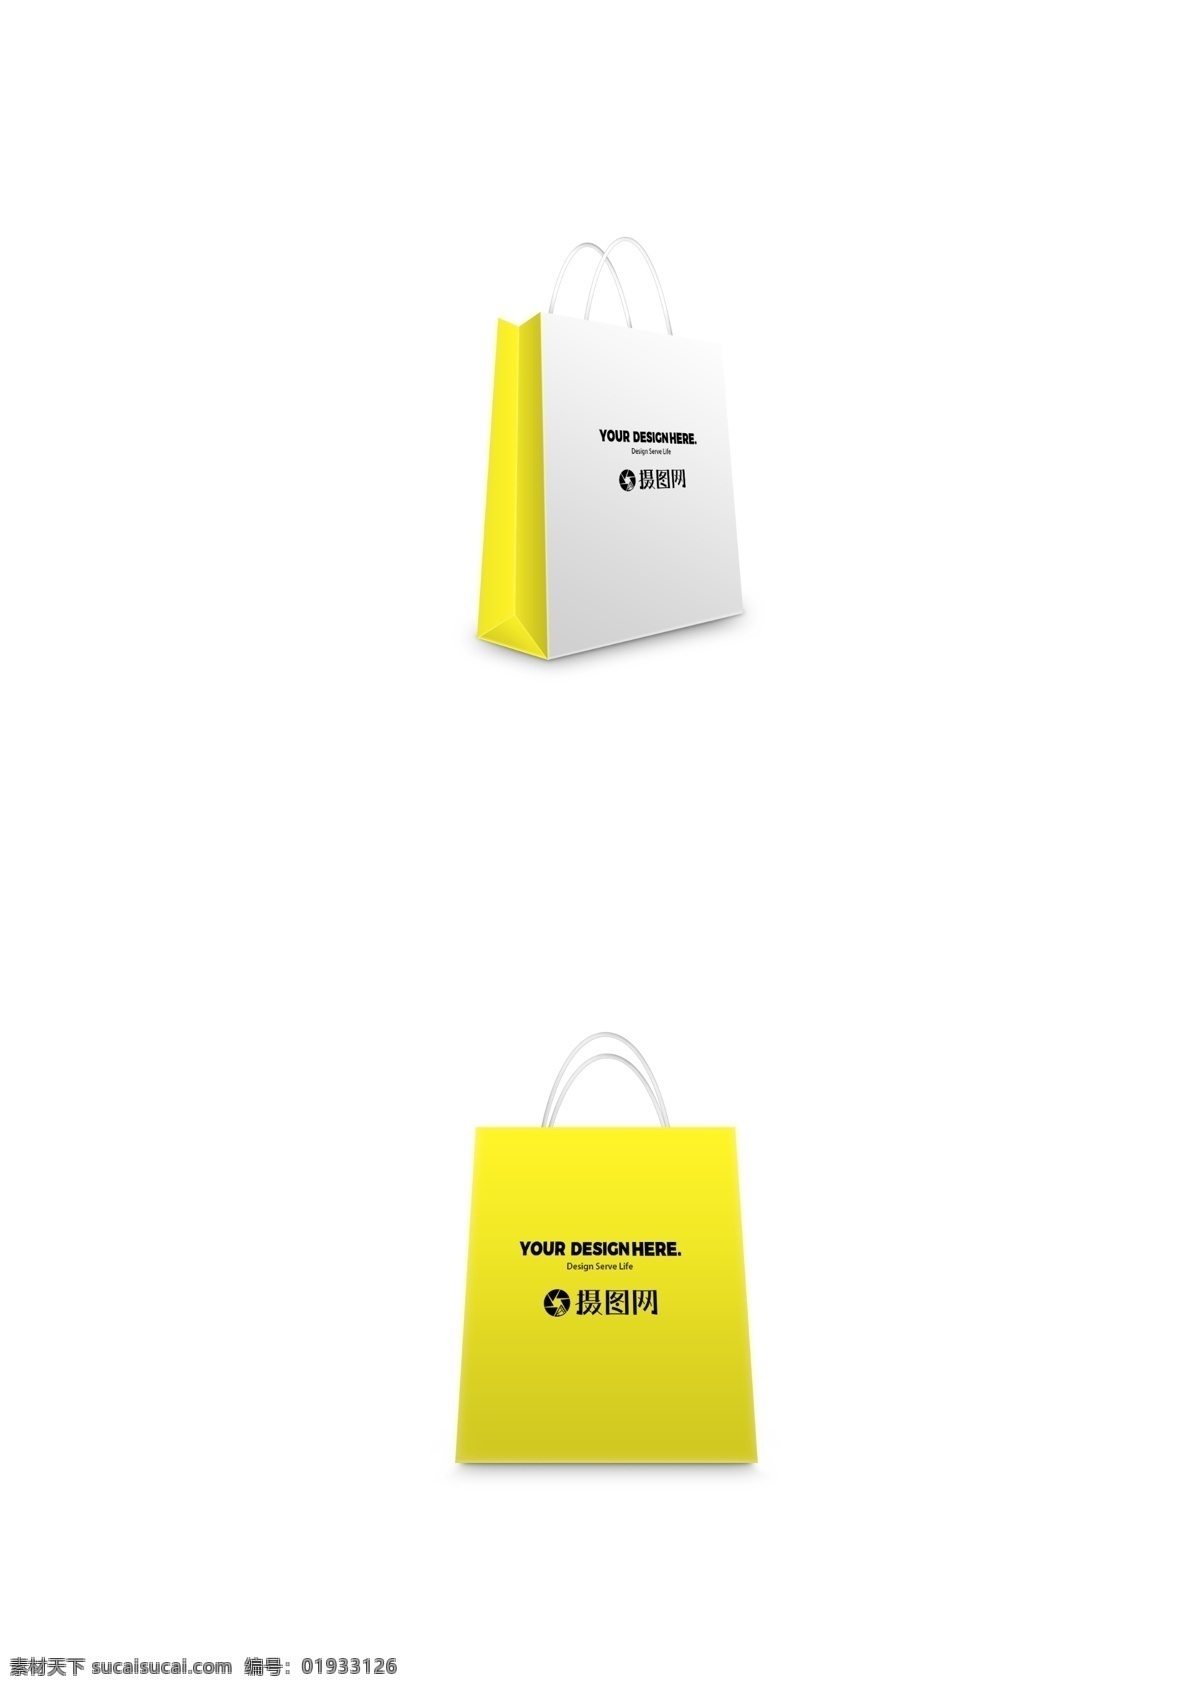 包装展示样机 包装样机 包装 样机 展示 图 包装样机模版 包装盒样机 包装设计 桌面竖立 简约 袋子 袋子样机 购物袋 袋子素材 黄色